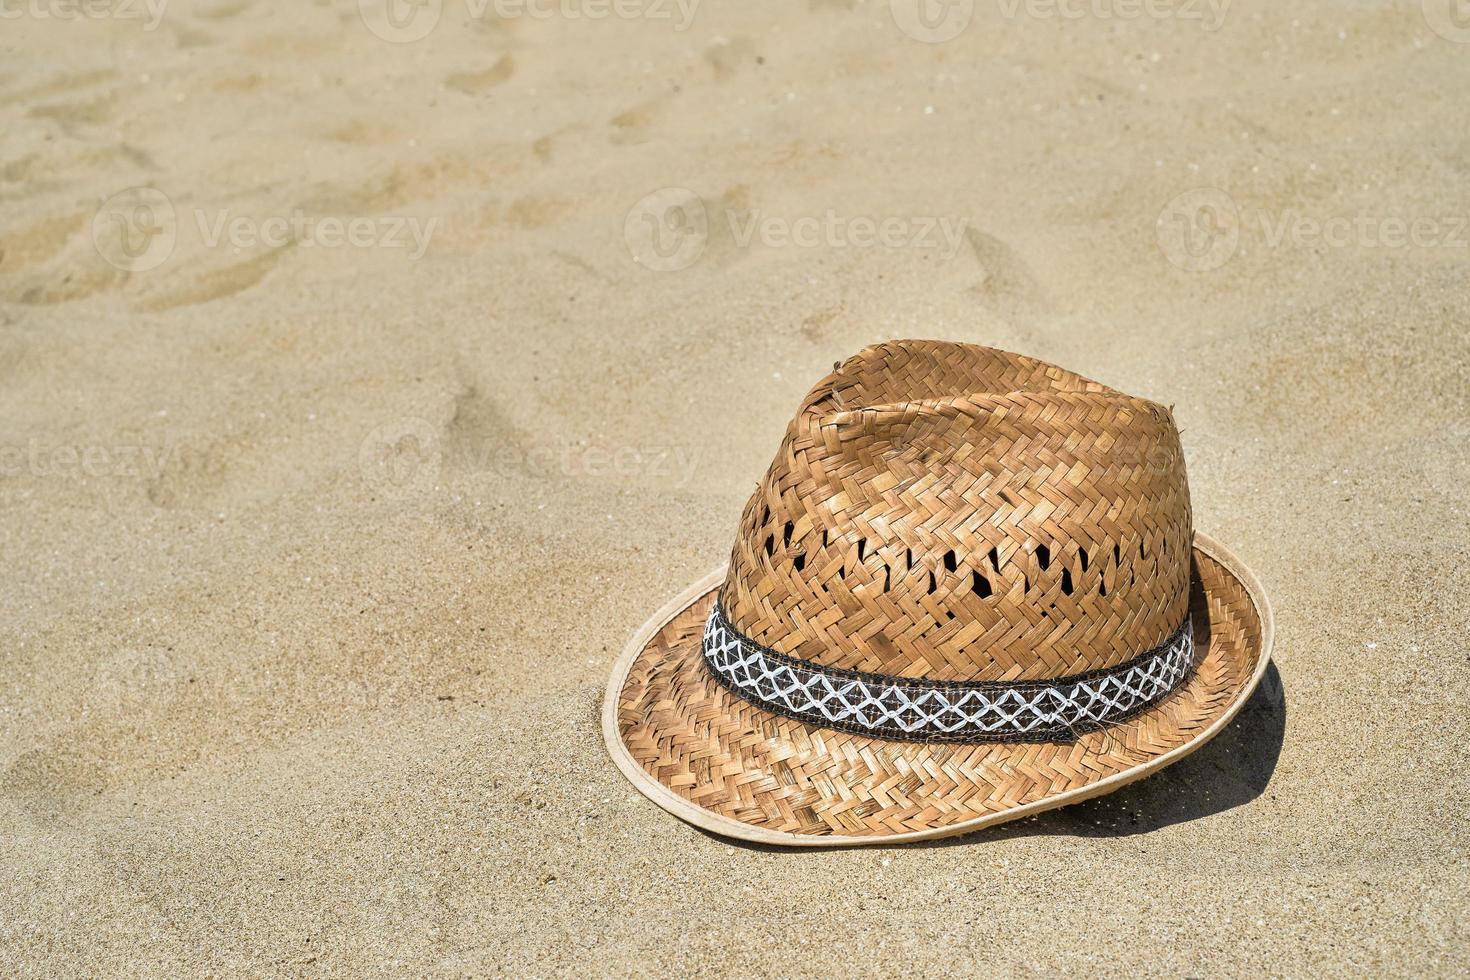 sombrero de playa de paja para hombres en la arena de la playa, primer plano, espacio para copiar texto. un hermoso día soleado. vacaciones, concepto de verano foto